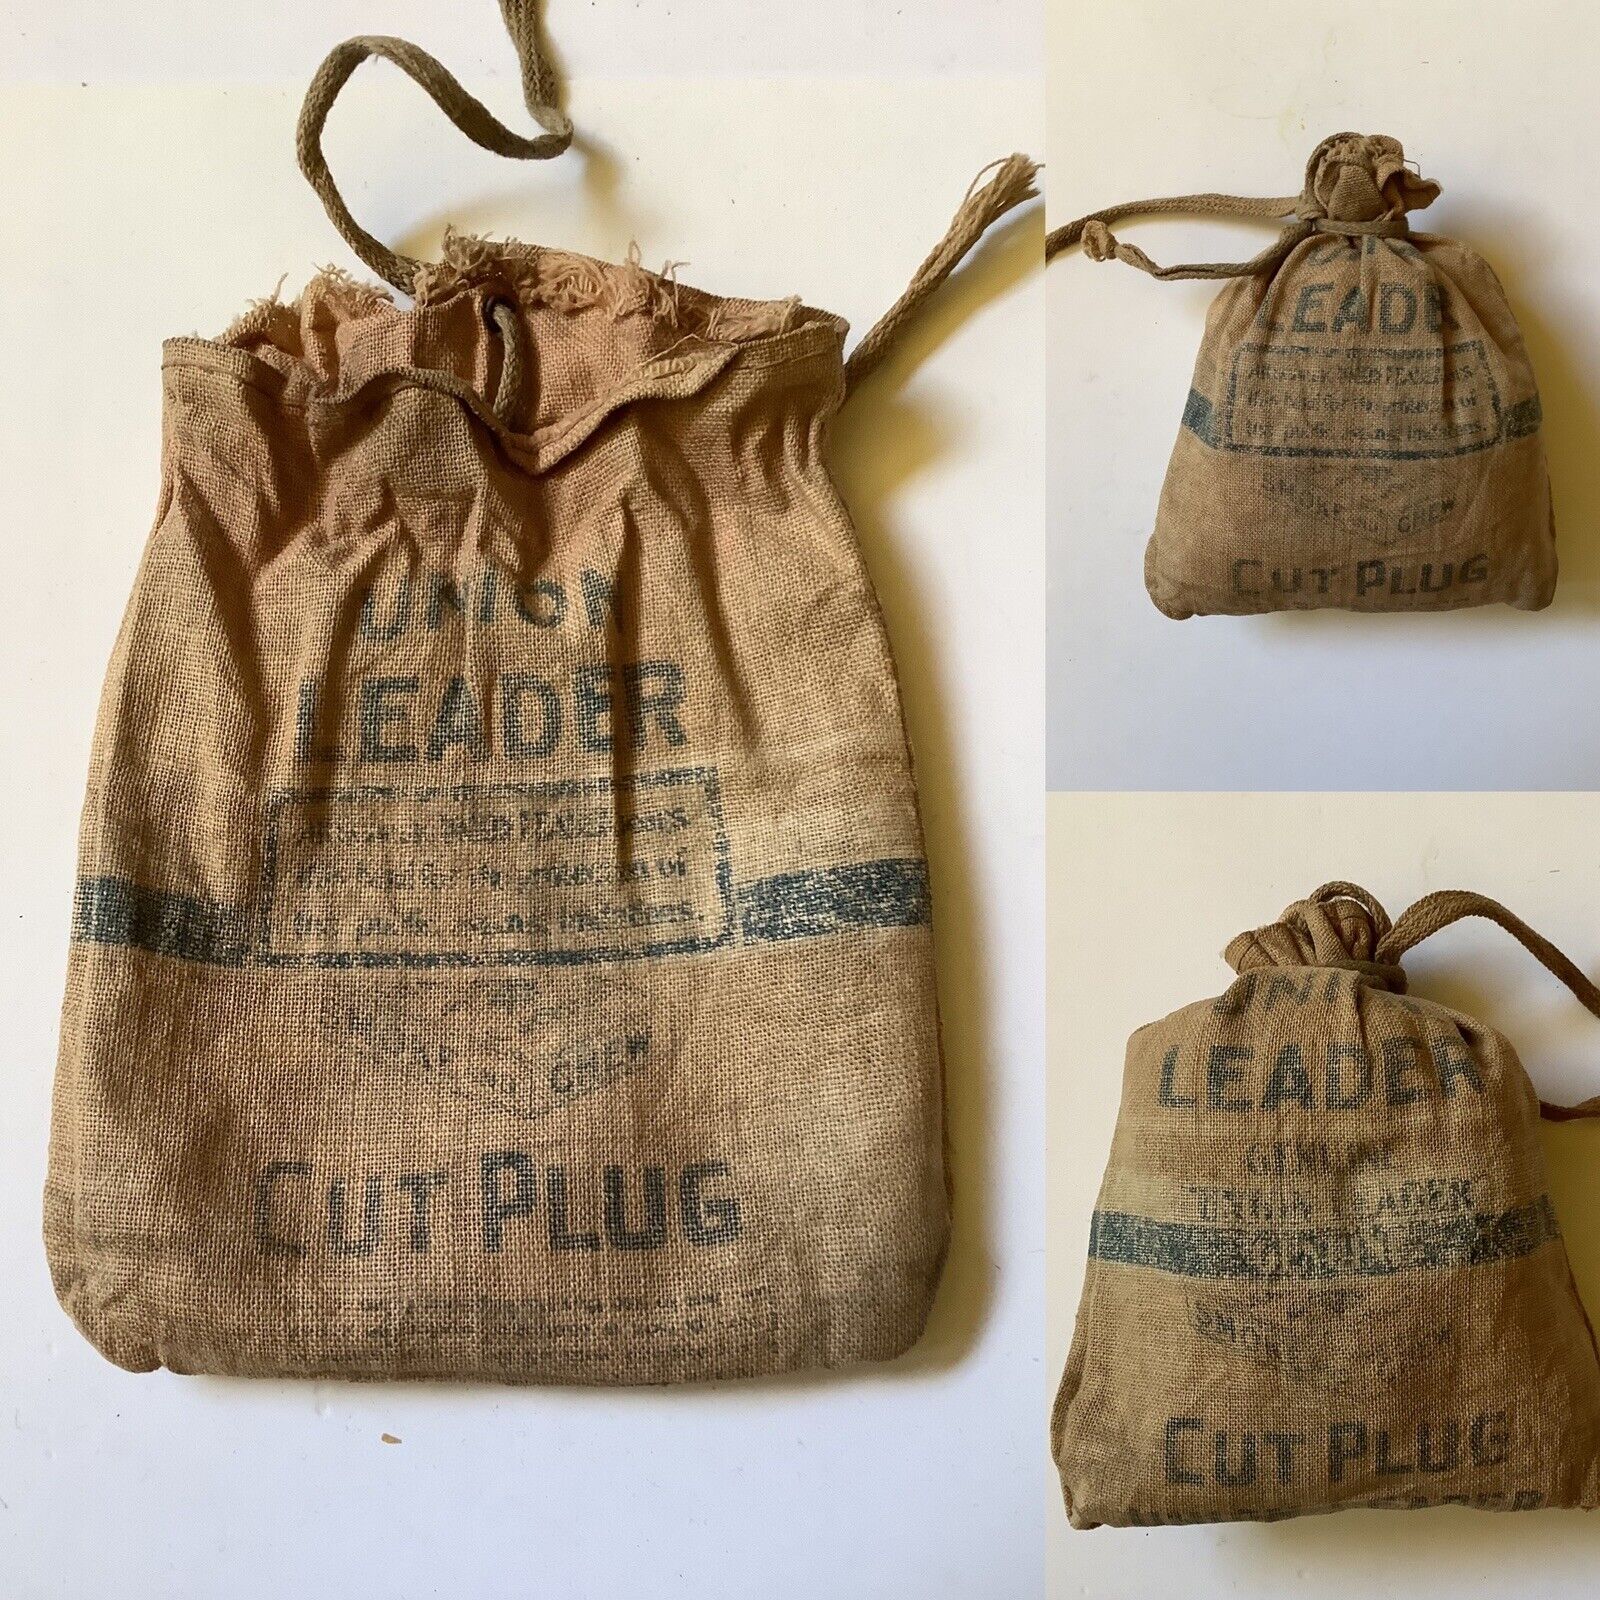 1920-40’ UNION LEADER Cut Plug Tobacco Bag. 4” X 5” Printed Cloth Bag w/String